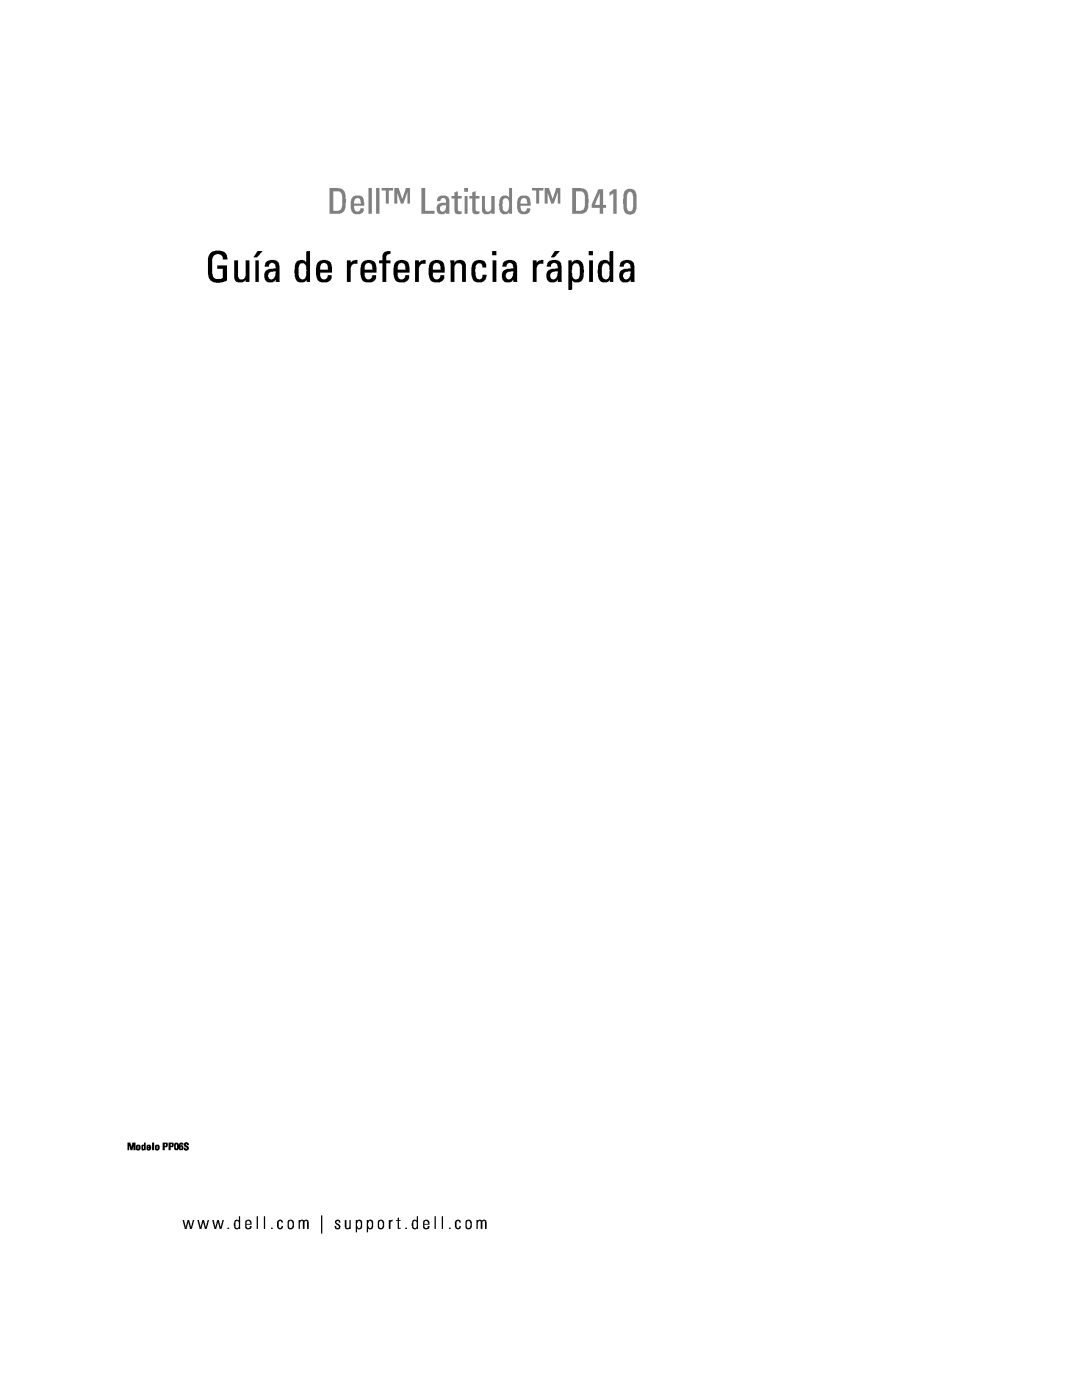 Dell manual Guía de referencia rápida, Dell Latitude D410, Modelo PP06S 